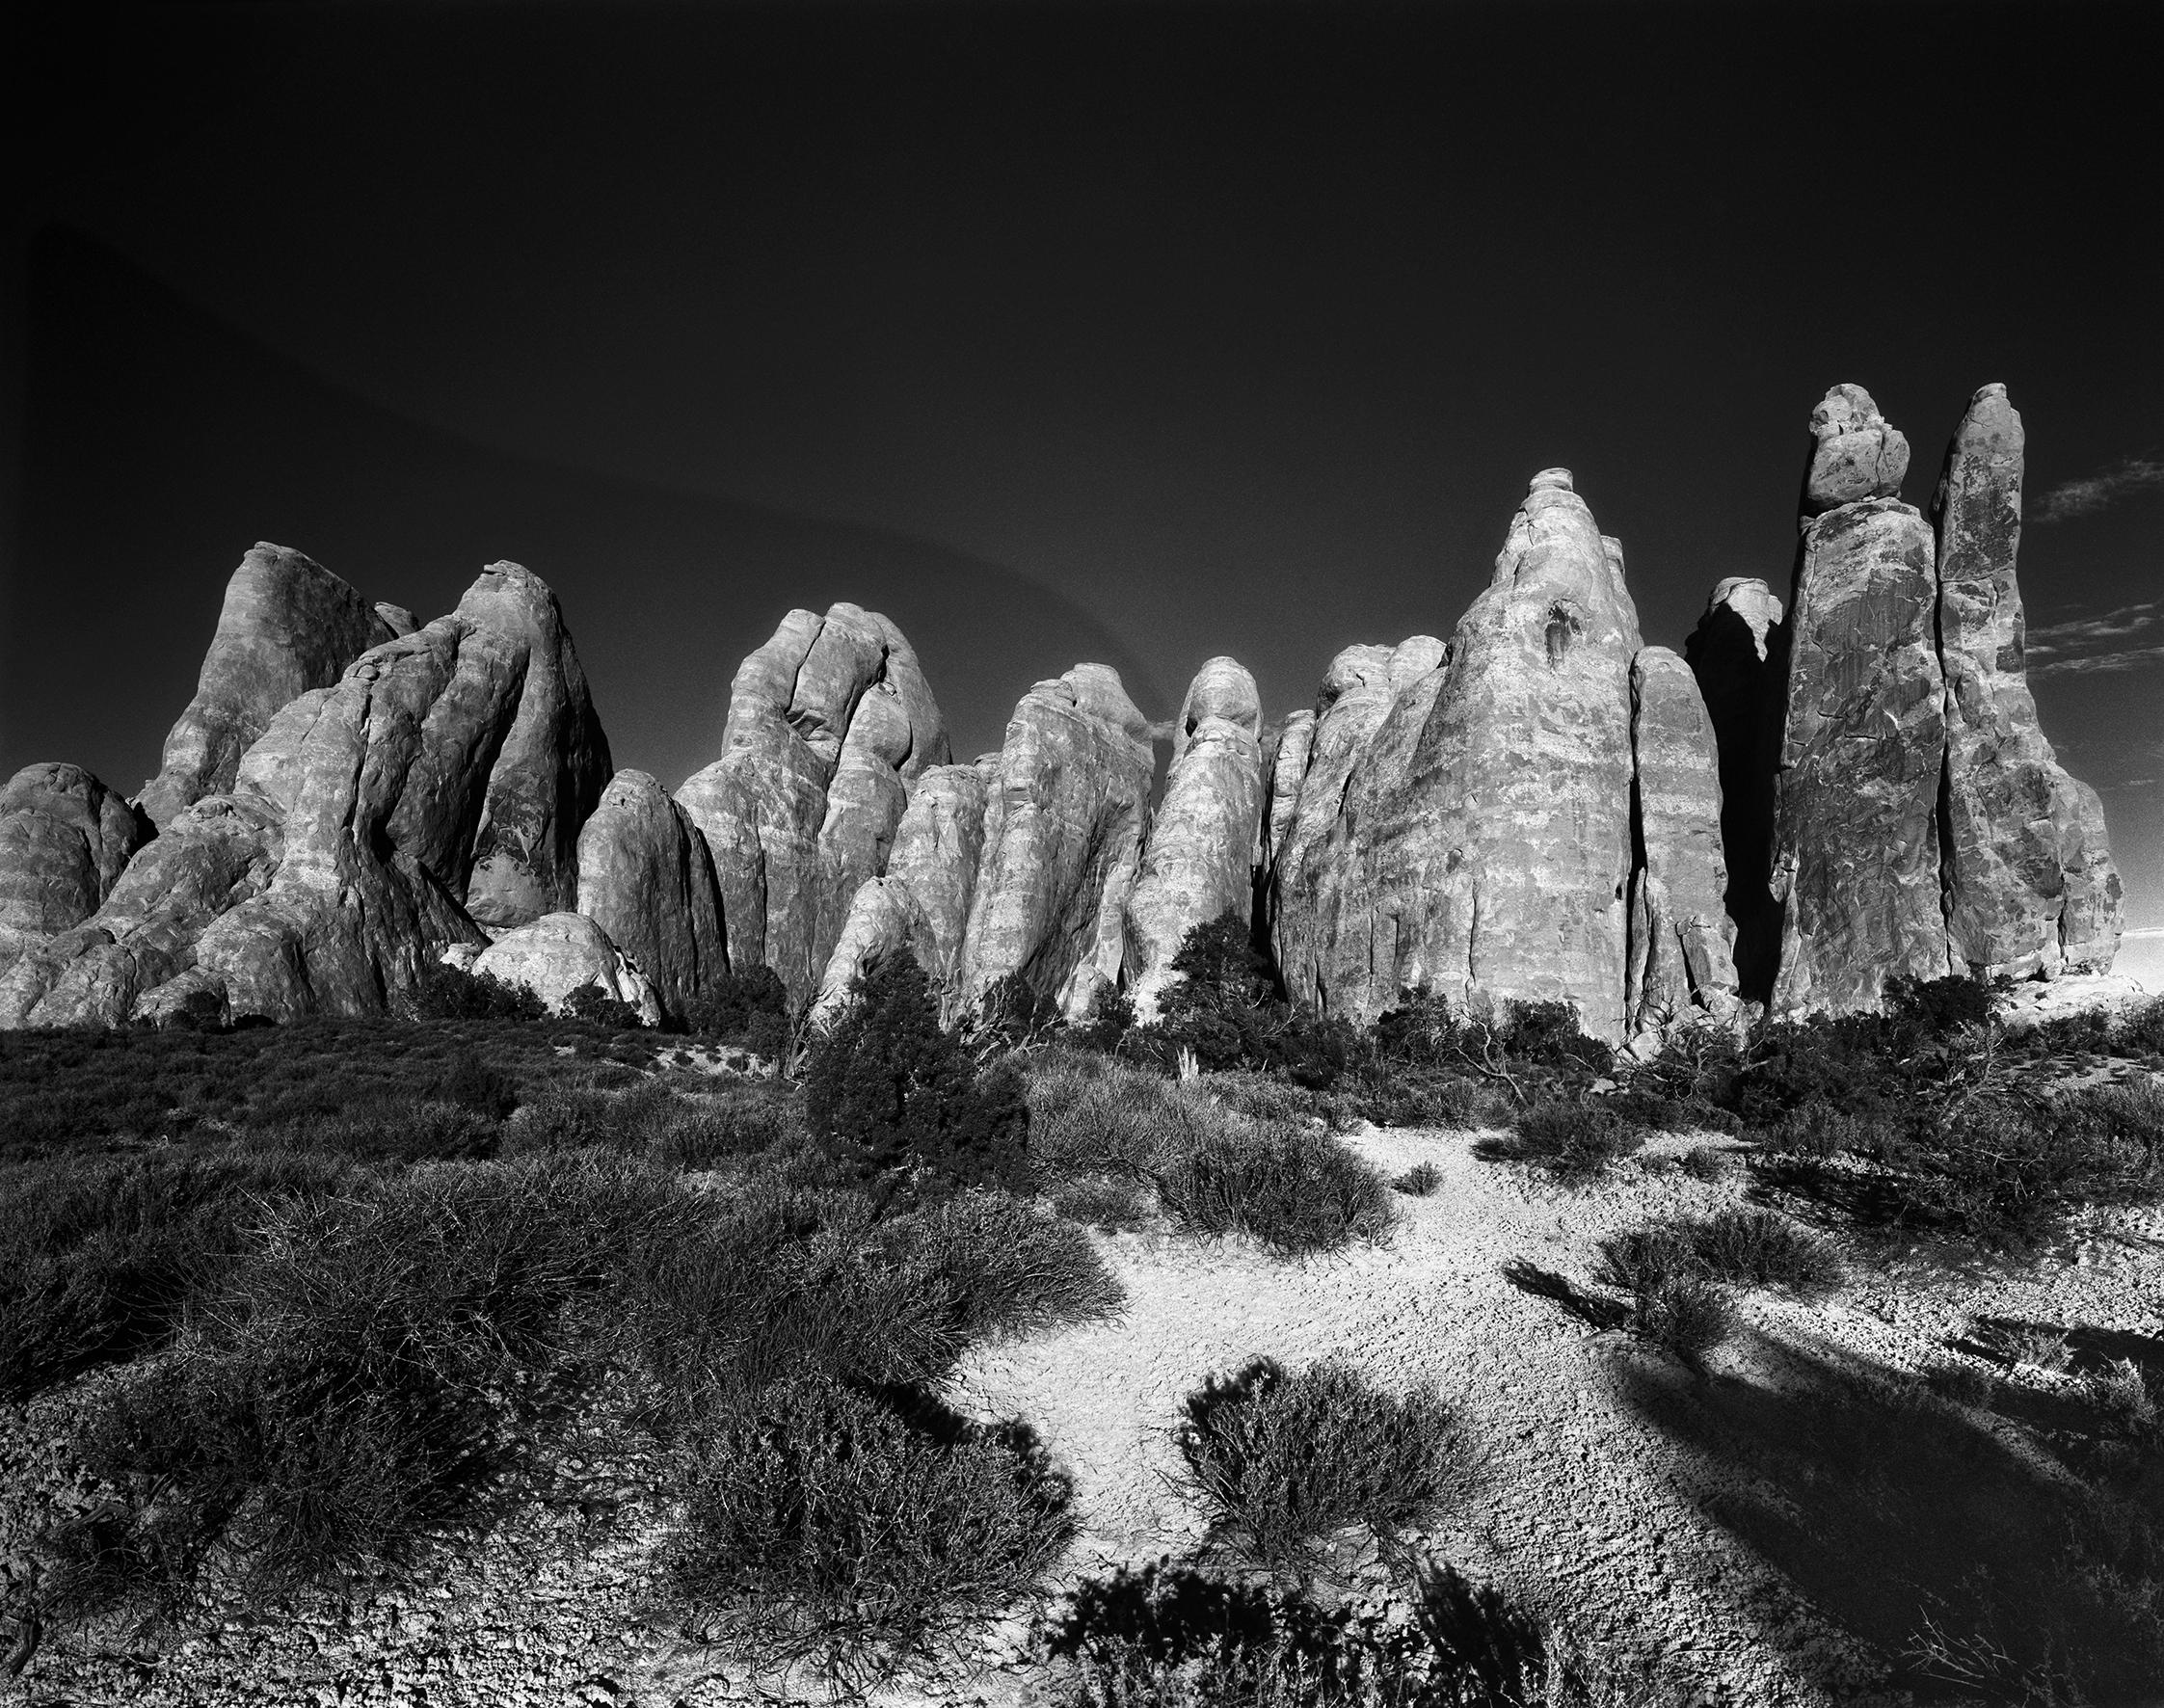 Ugne Pouwell Black and White Photograph – Sand Dune Arches – Schwarz-Weiß-Bergbögenfotografie, limitierte Auflage von 10 Stück